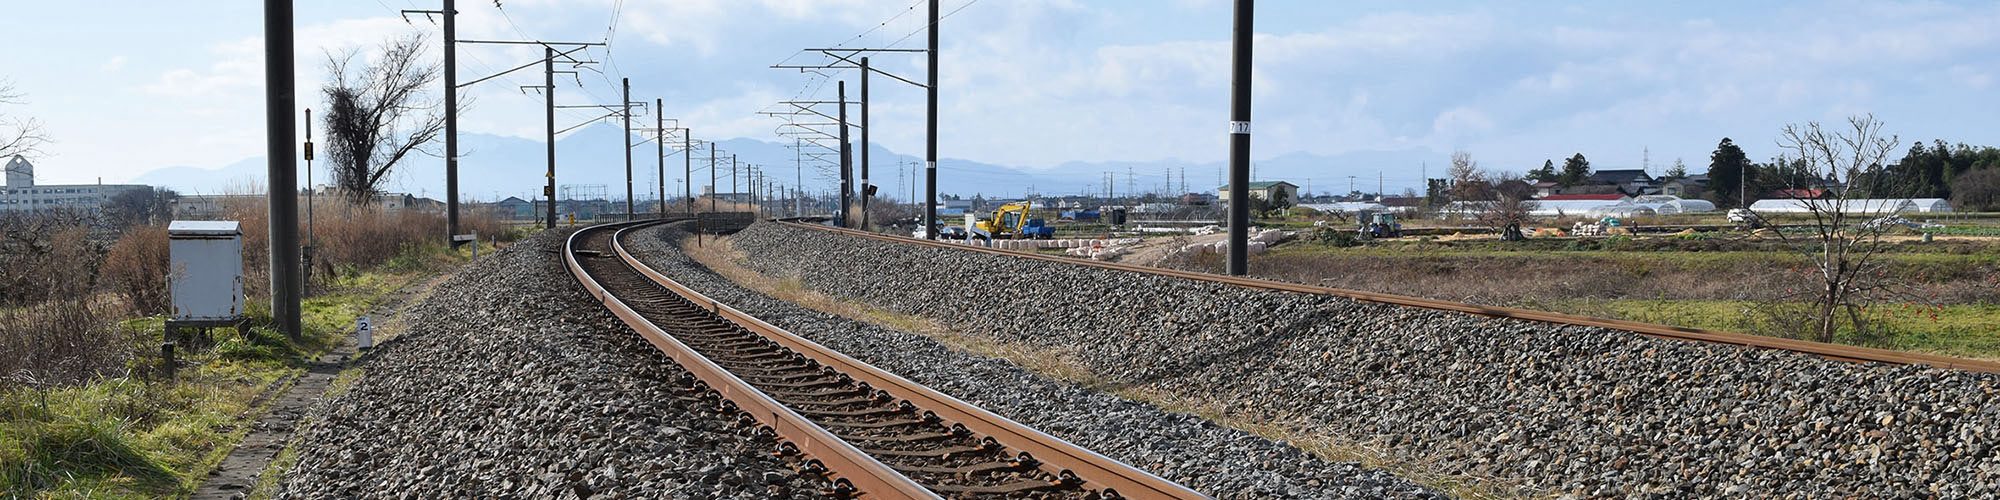 Sécurité électrique pour une exploitation des transports ferroviaires exempte de perturbations